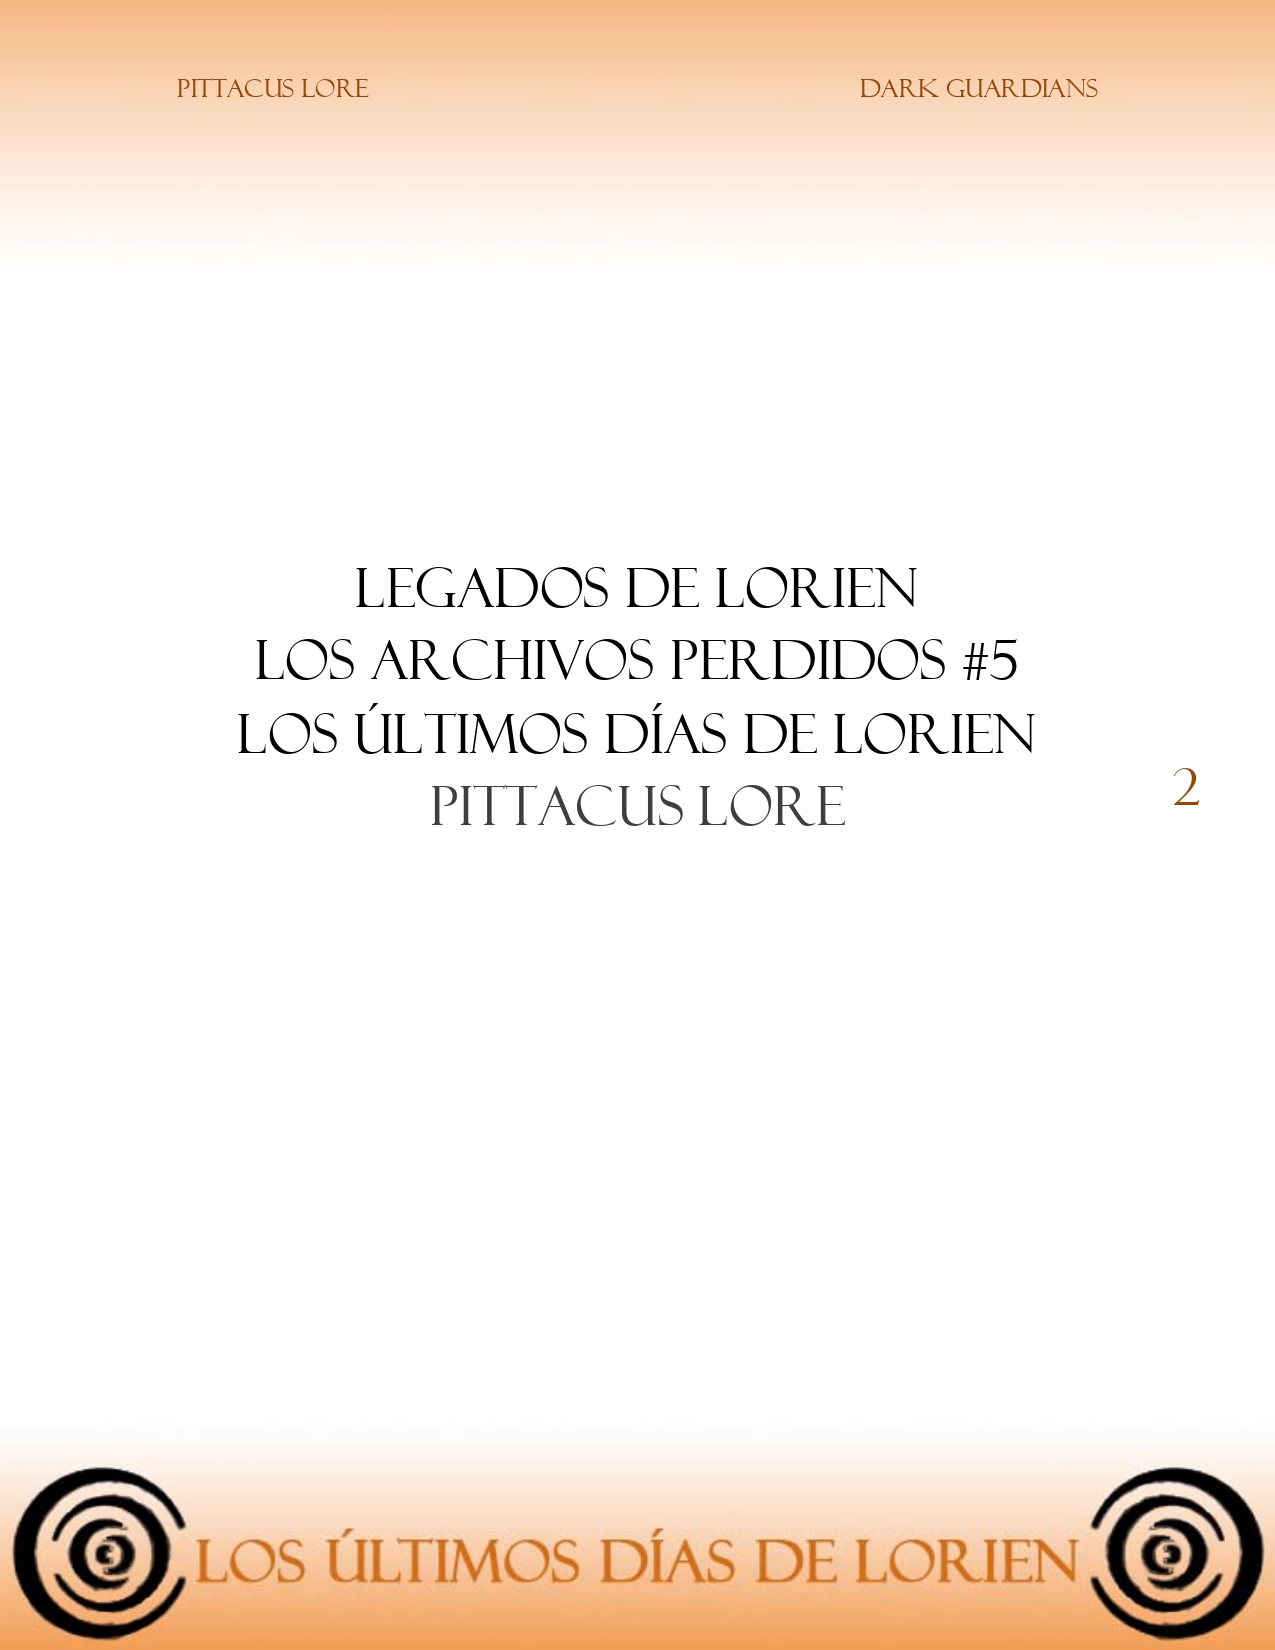 Los Legados De Lorien (Orden Cronológico) Los archivos perdidos: Los últimos días de Lorien